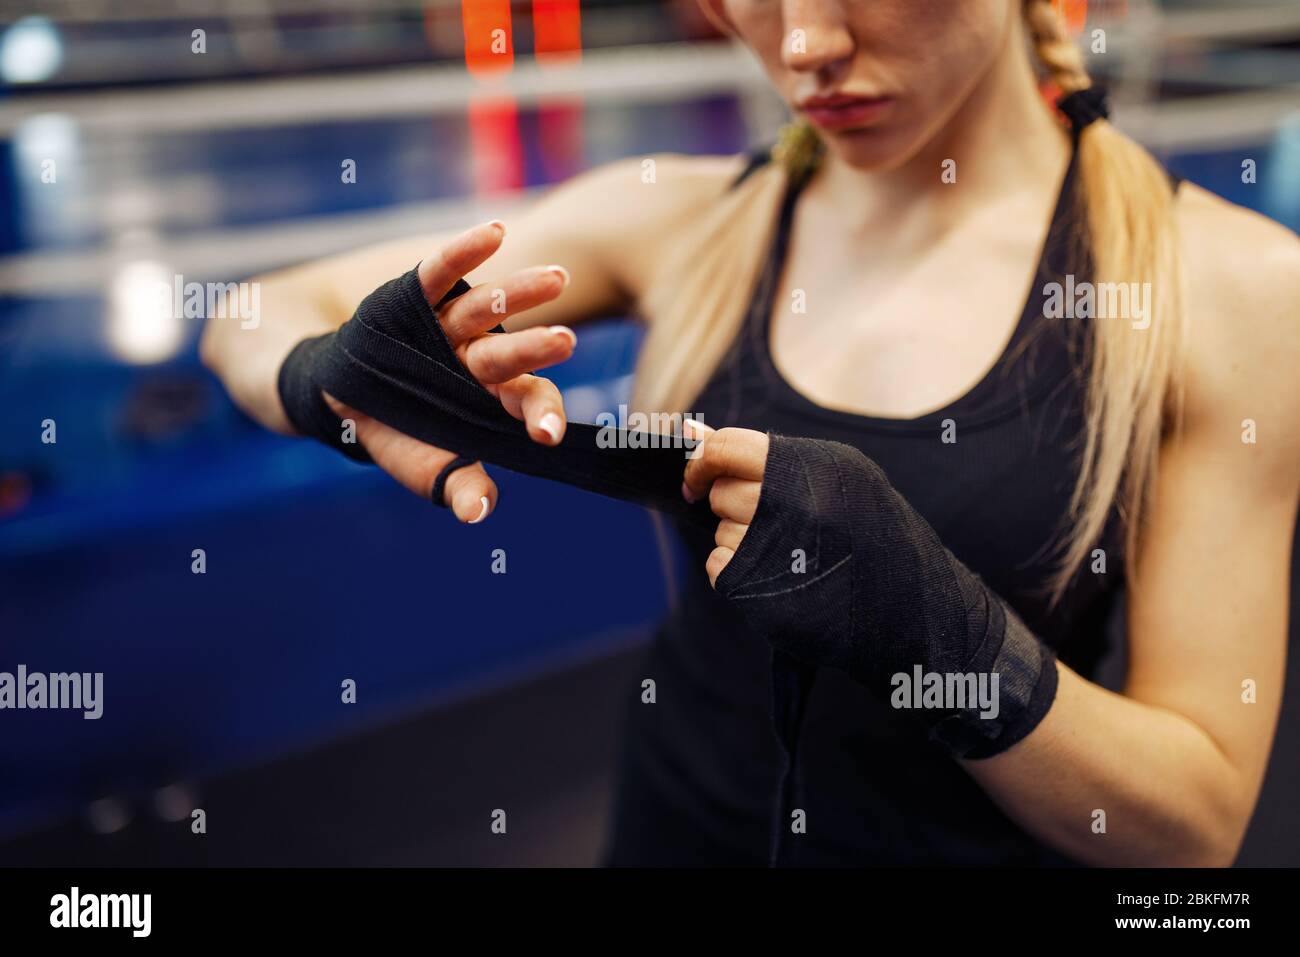 Woman winds up black bandages, boxing training Stock Photo